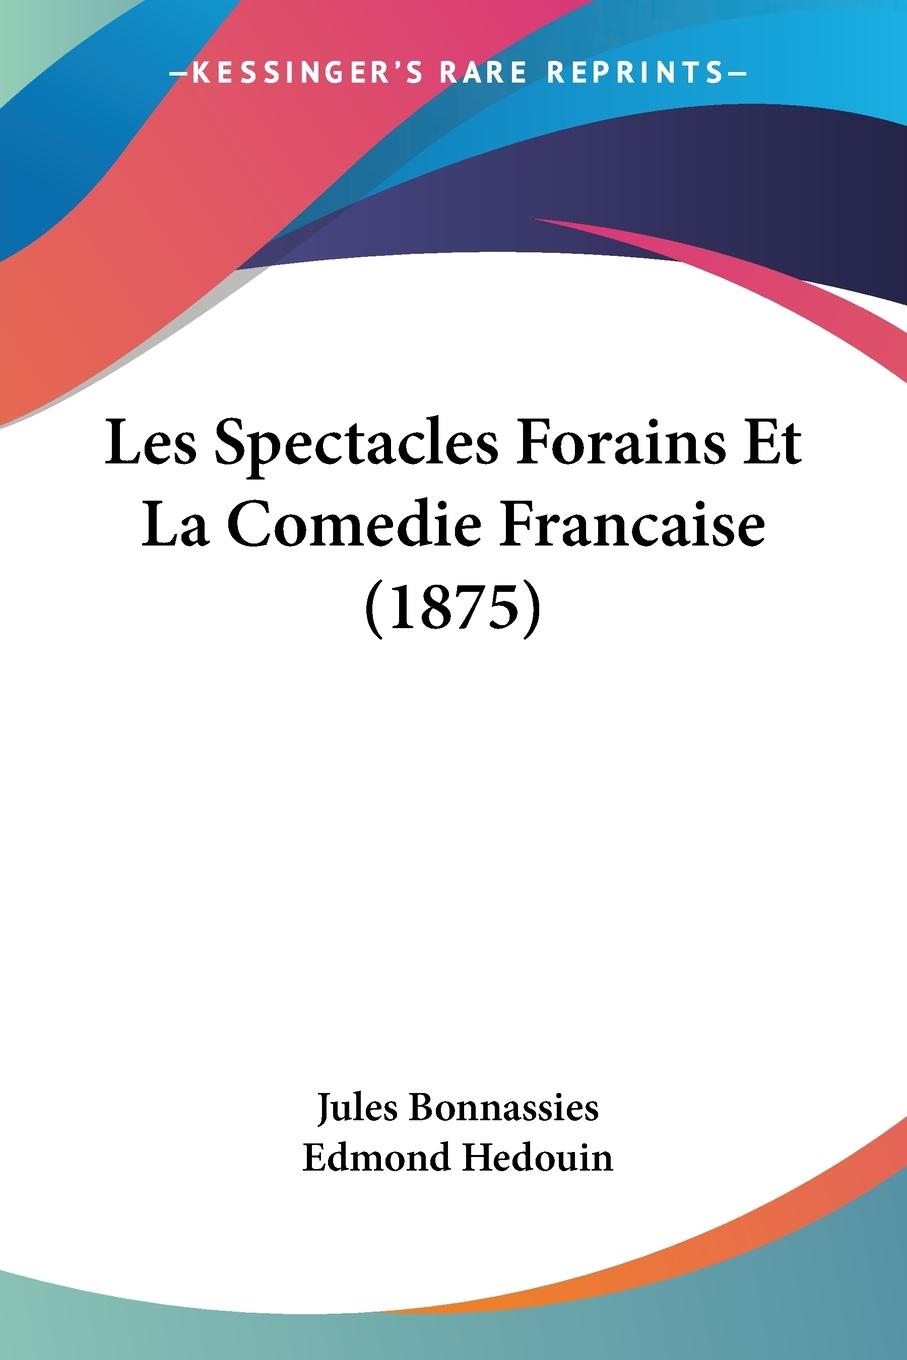 Les Spectacles Forains Et La Comedie Francaise (1875) - Bonnassies, Jules Hedouin, Edmond